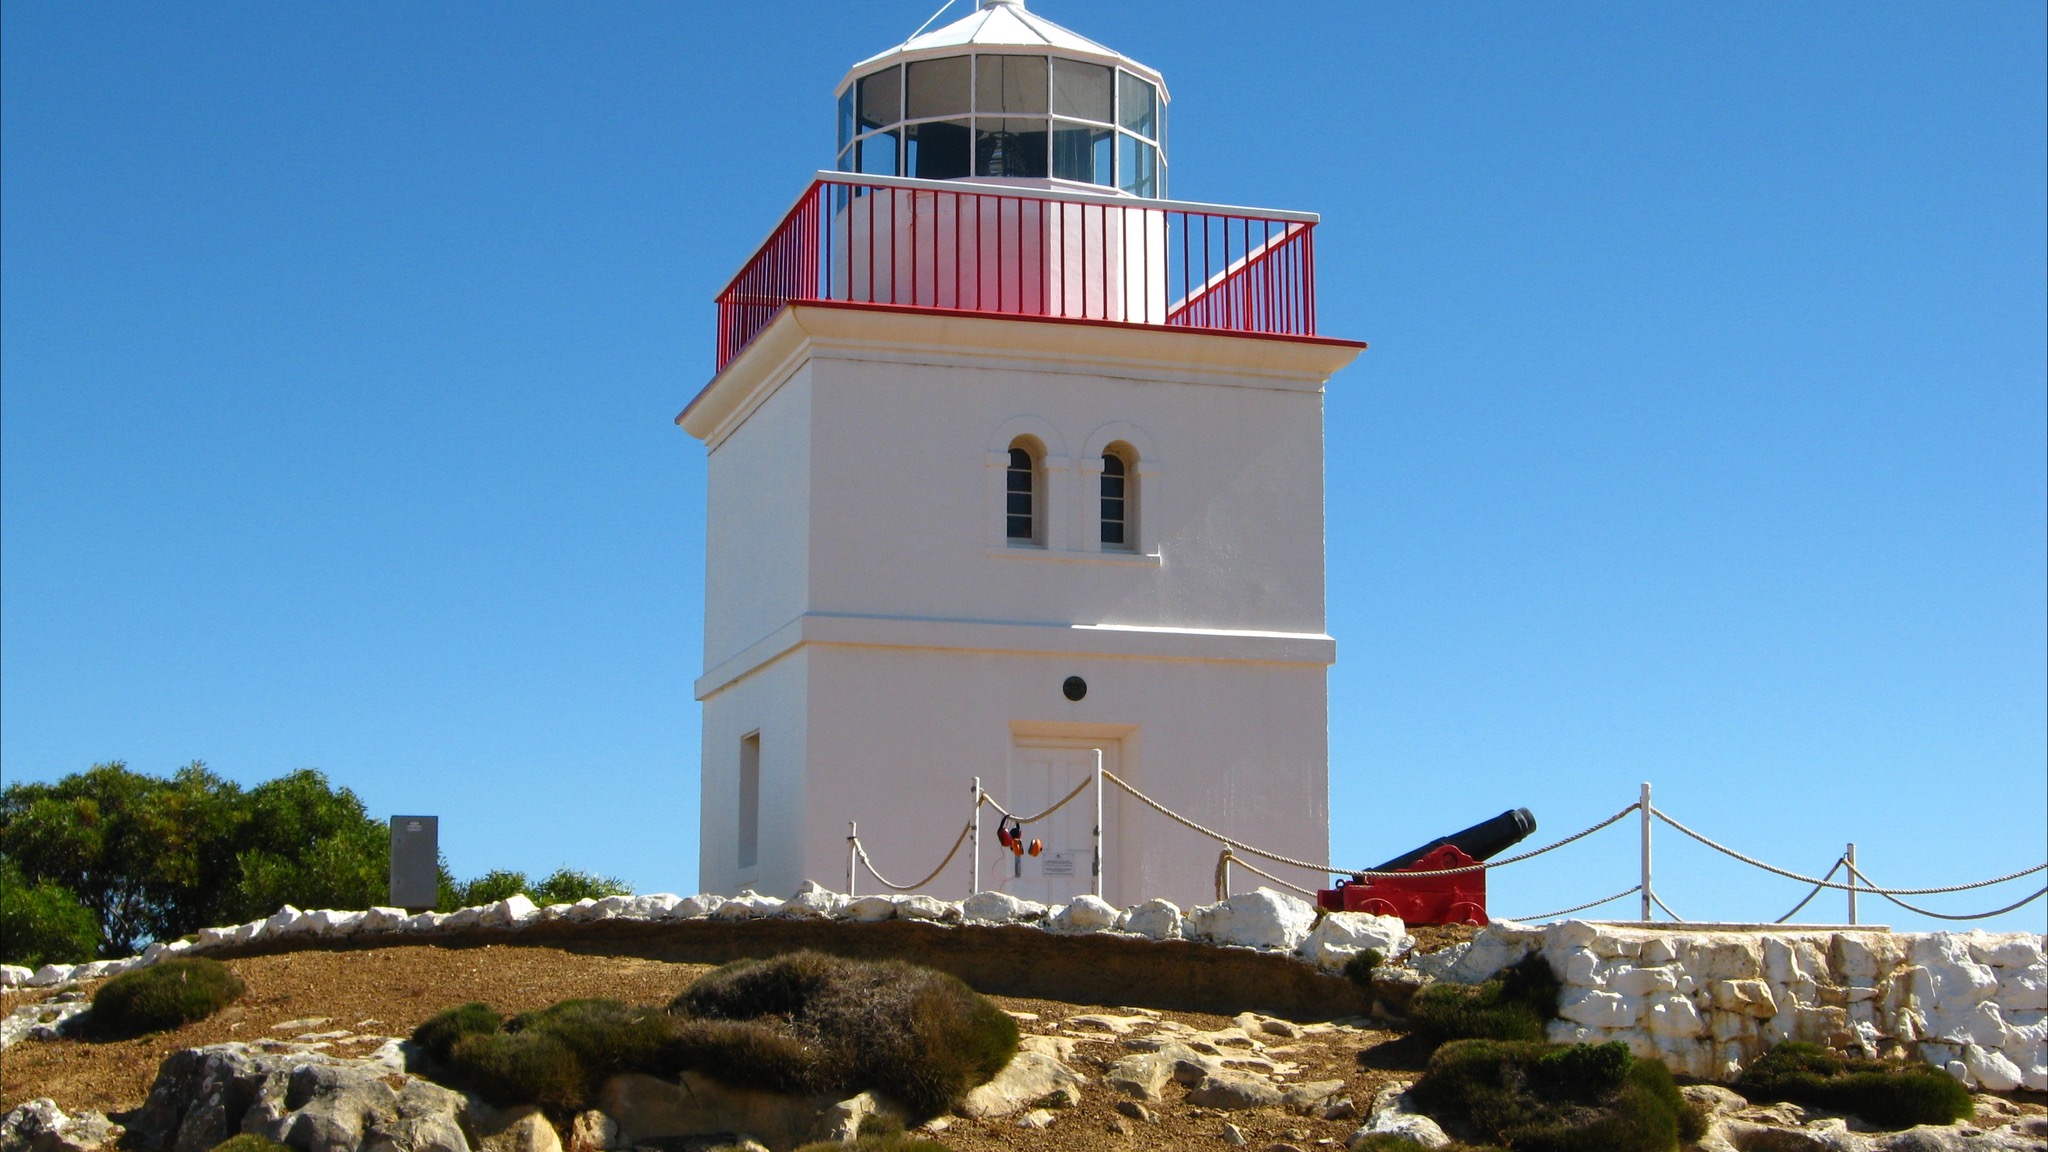 Cape Borda Lighthouse Keepers Heritage Accommodation - Hotel Accommodation